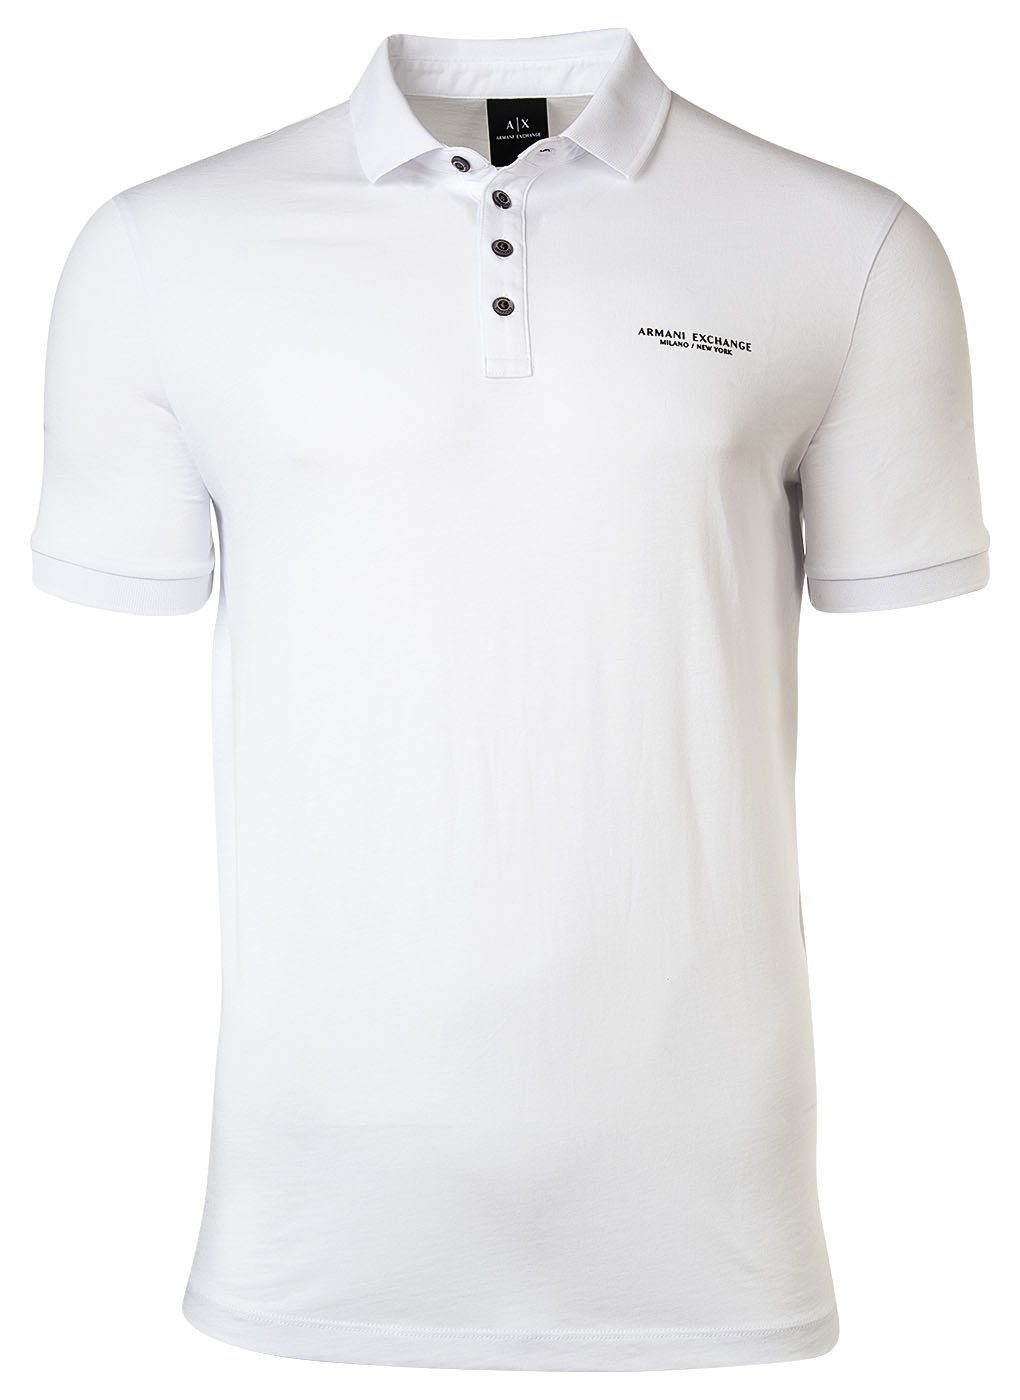 ARMANI EXCHANGE Poloshirt Weiß Poloshirt fit, Cotton Slim Herren Schriftzug, 